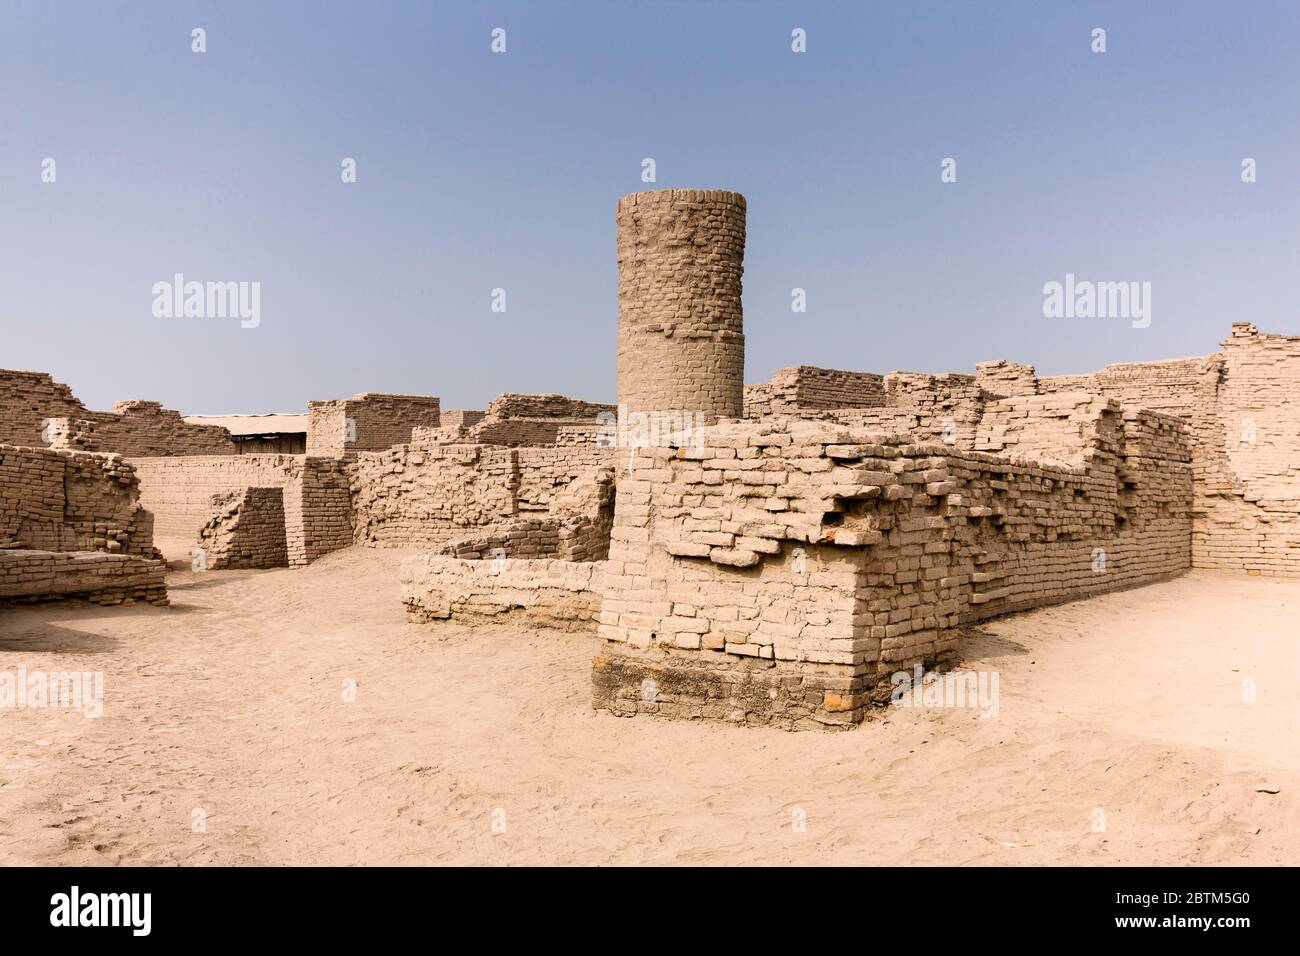 Mohenjo daro, puits, région DK, site archéologique de la civilisation de la vallée de l'Indus, 2500 BCE, district de Larkana, province de Sindh, Pakistan, Asie du Sud, Asie Banque D'Images